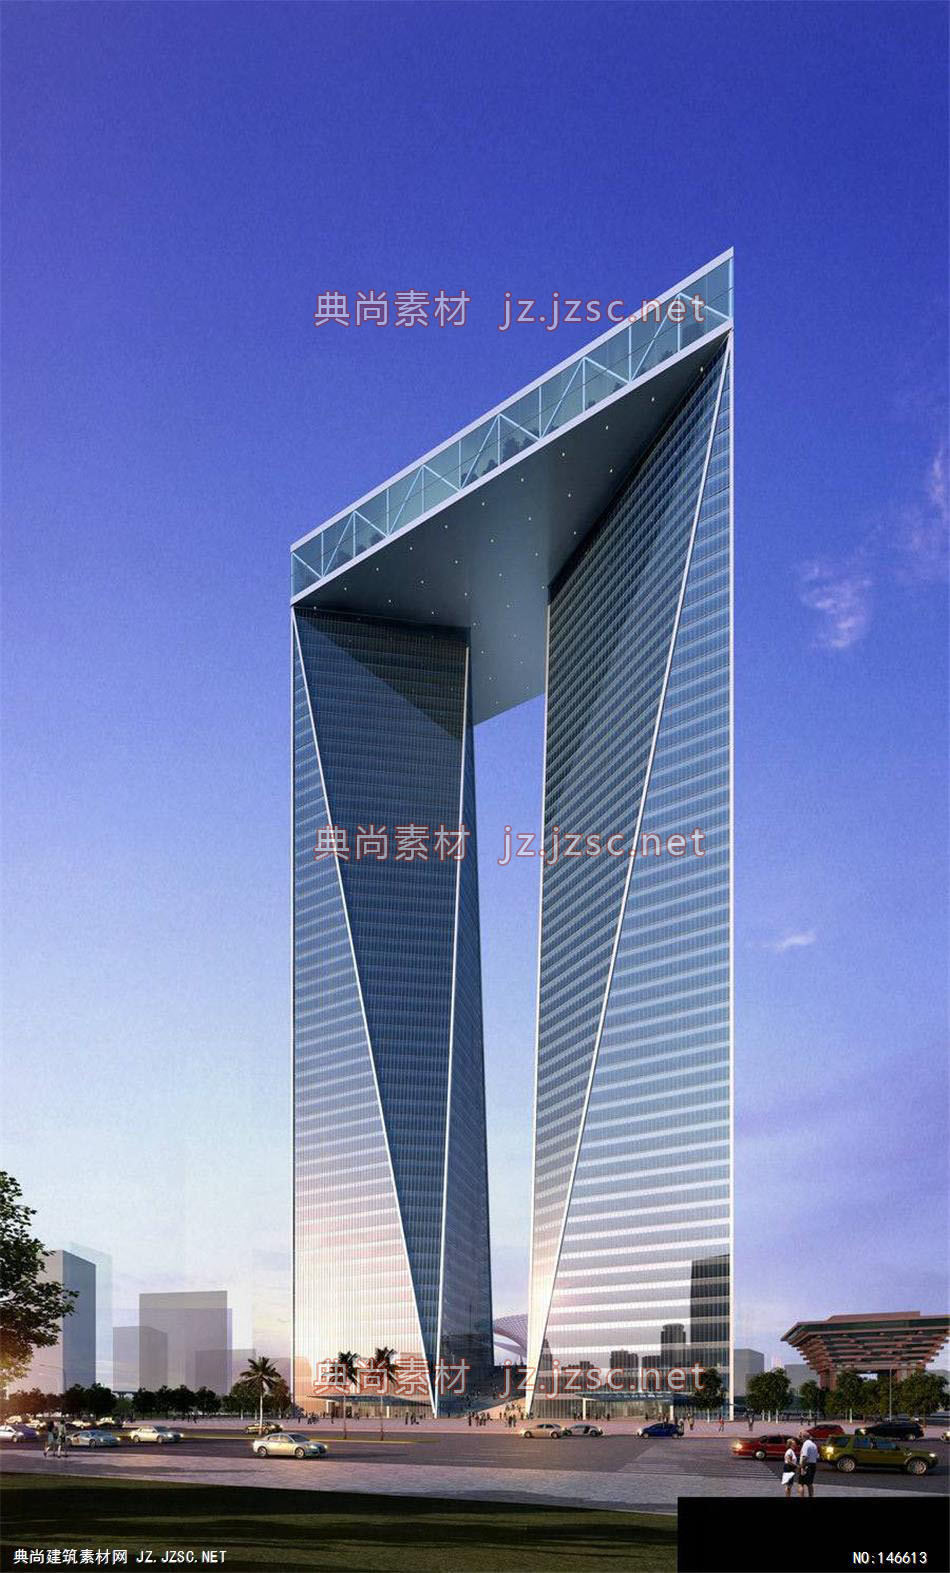 同济一所-吴工-世博后续项目办公-1效果图-办公楼效果图办公建筑